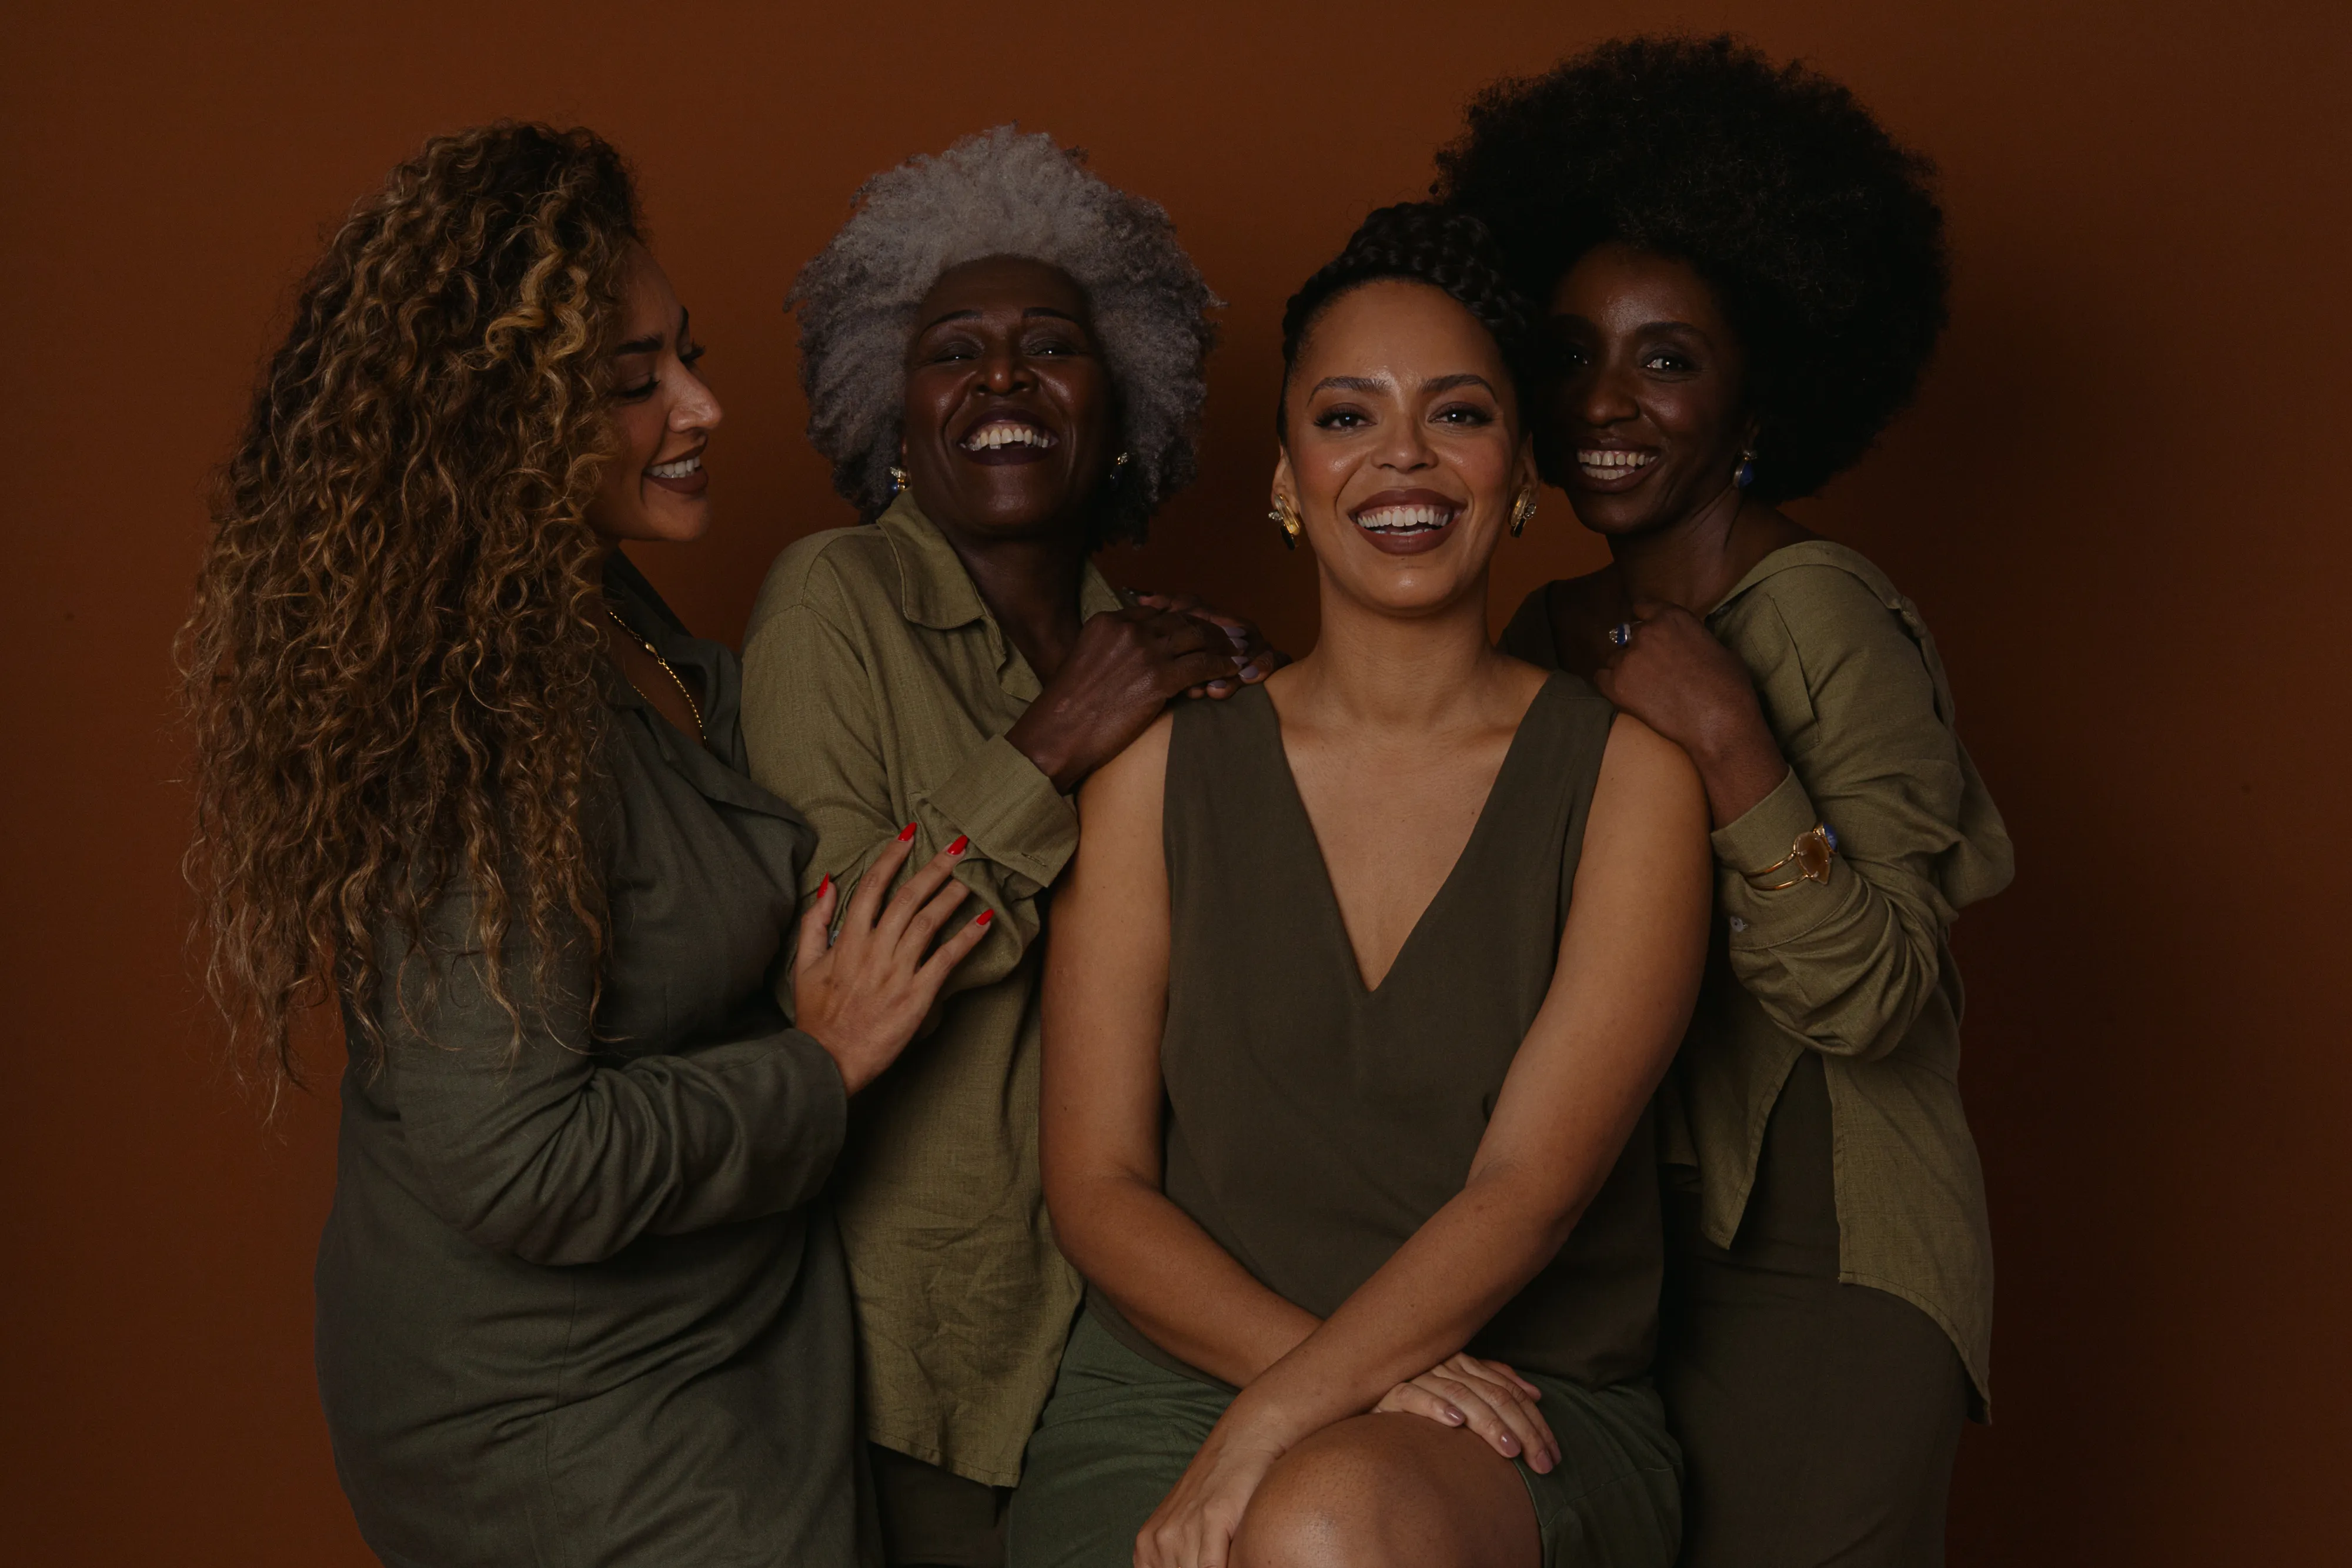 Fotos retratam a beleza e a luta de quatro mulheres pretas